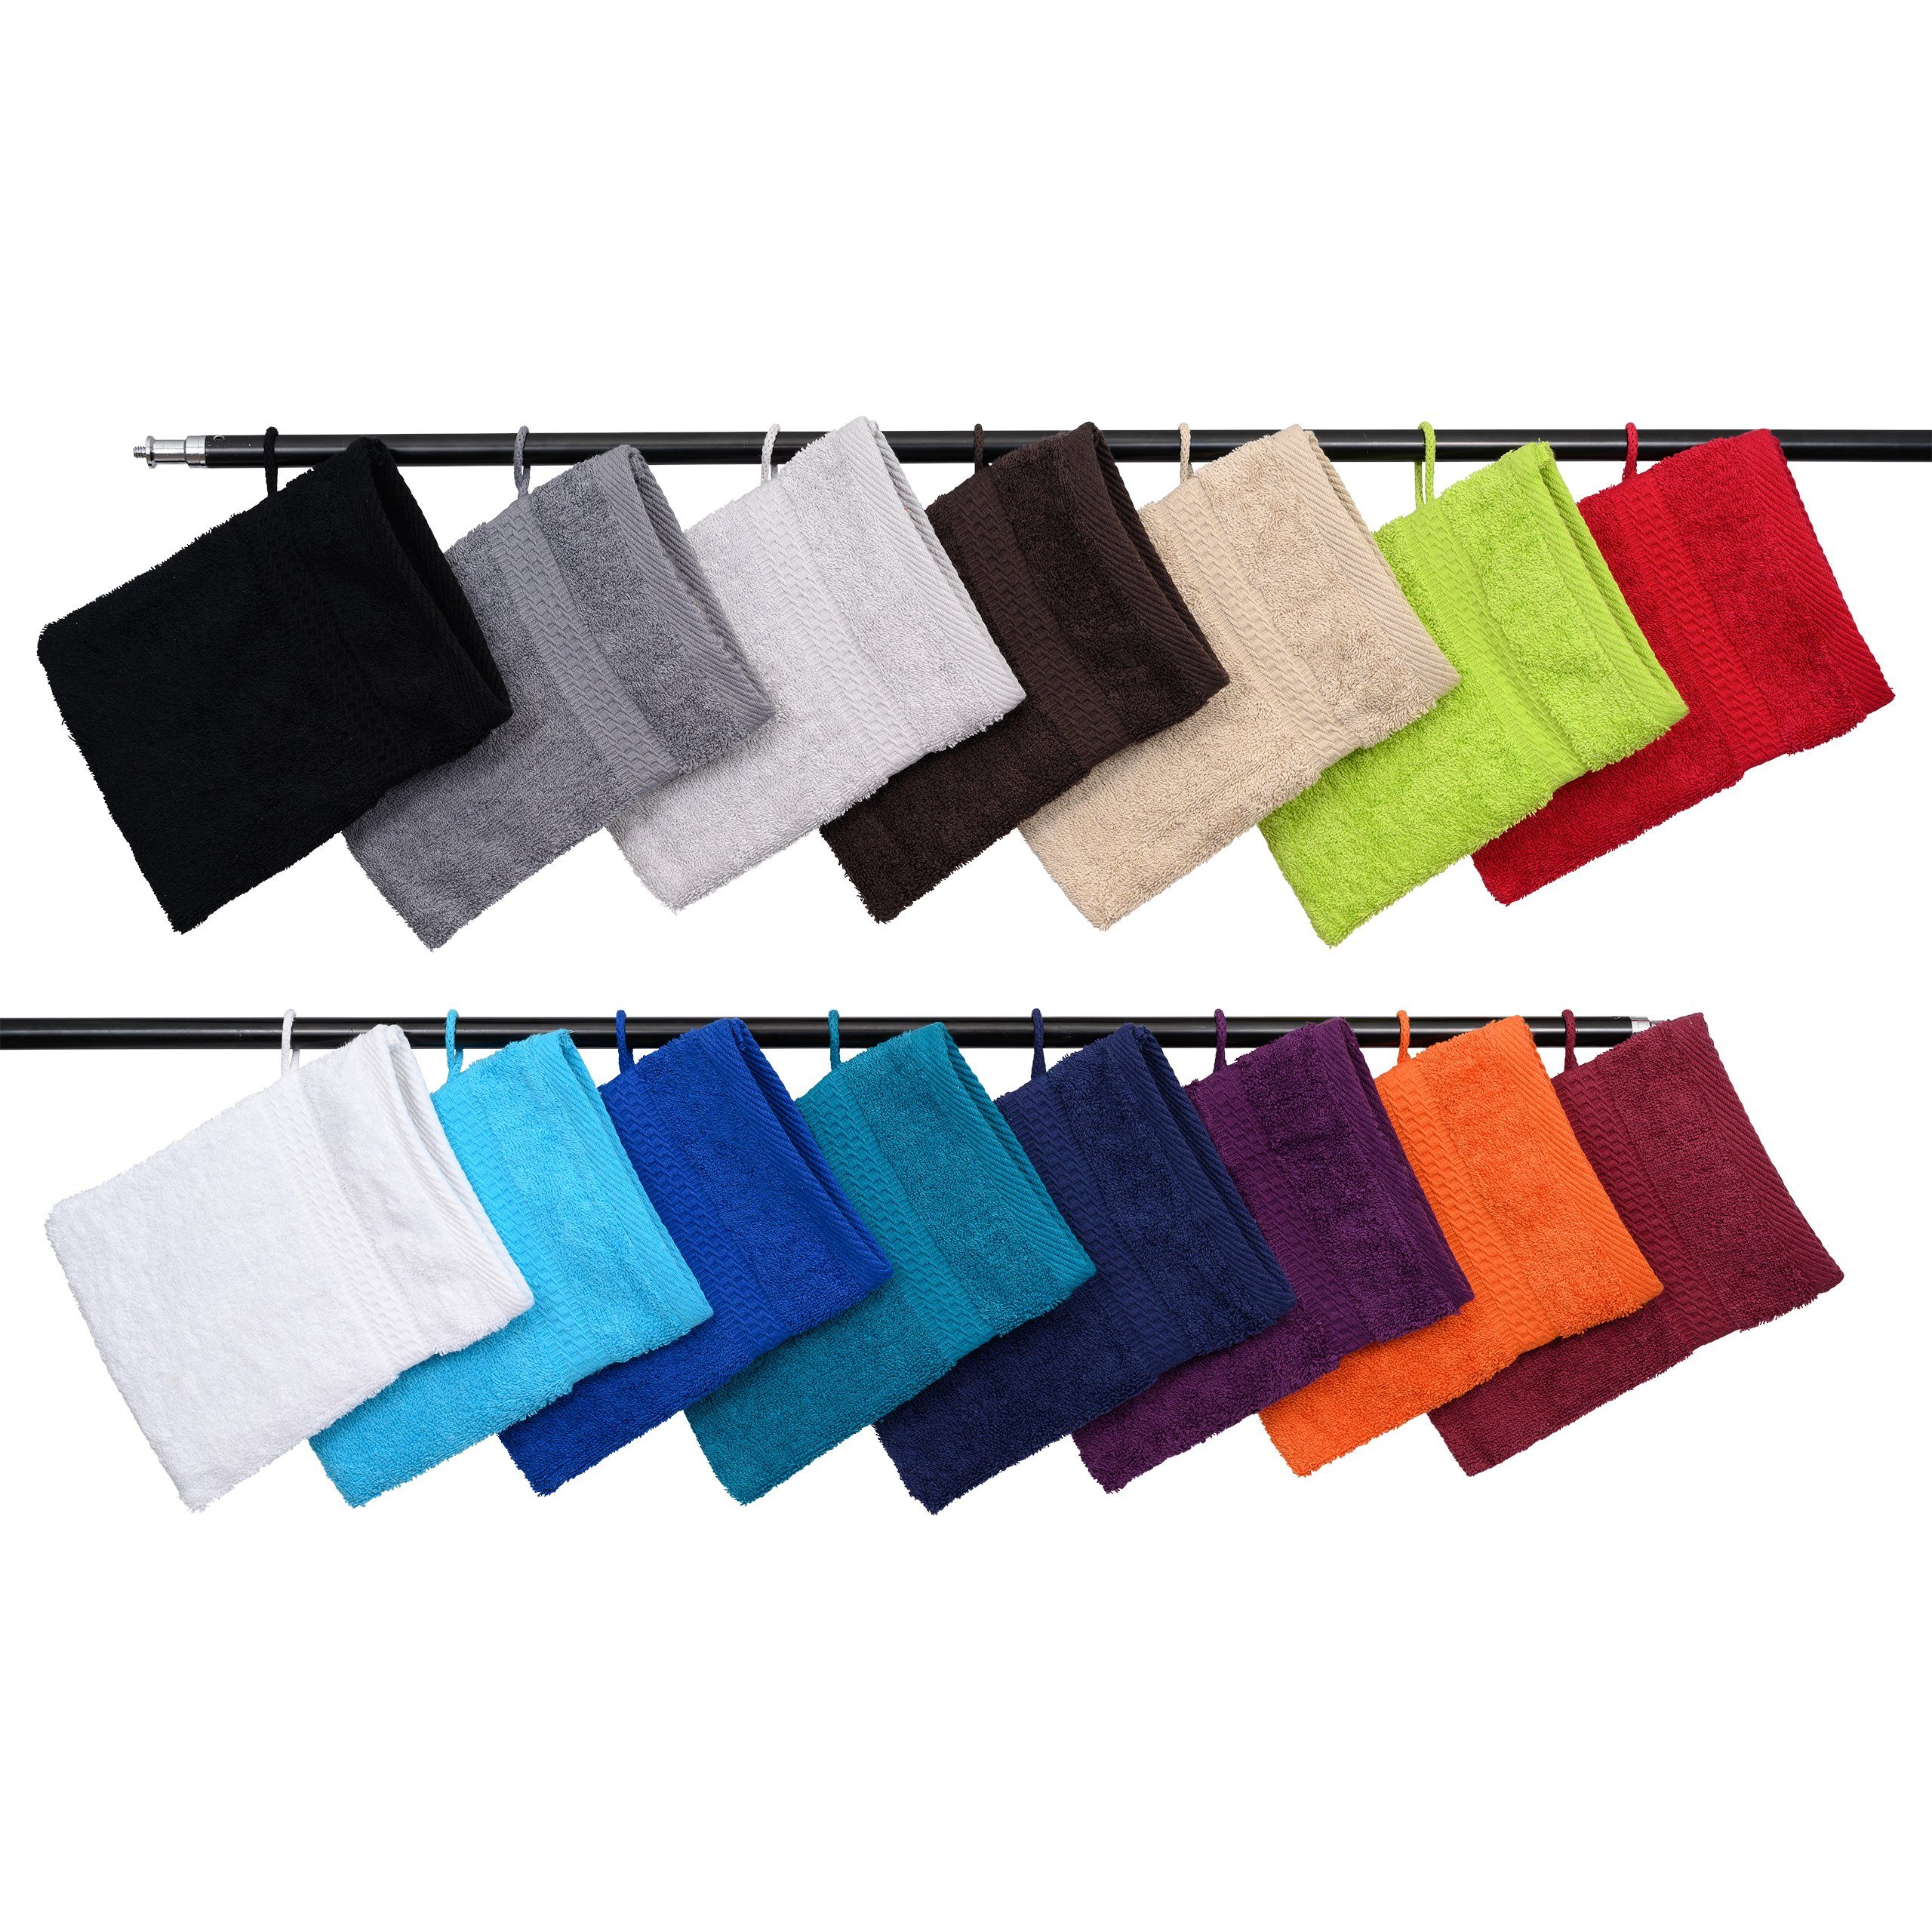 Hometex Premium Textiles Waschhandschuh Waschhandschuh in vielen verschiedenen Farben & im praktischen 10er Set Schwarz